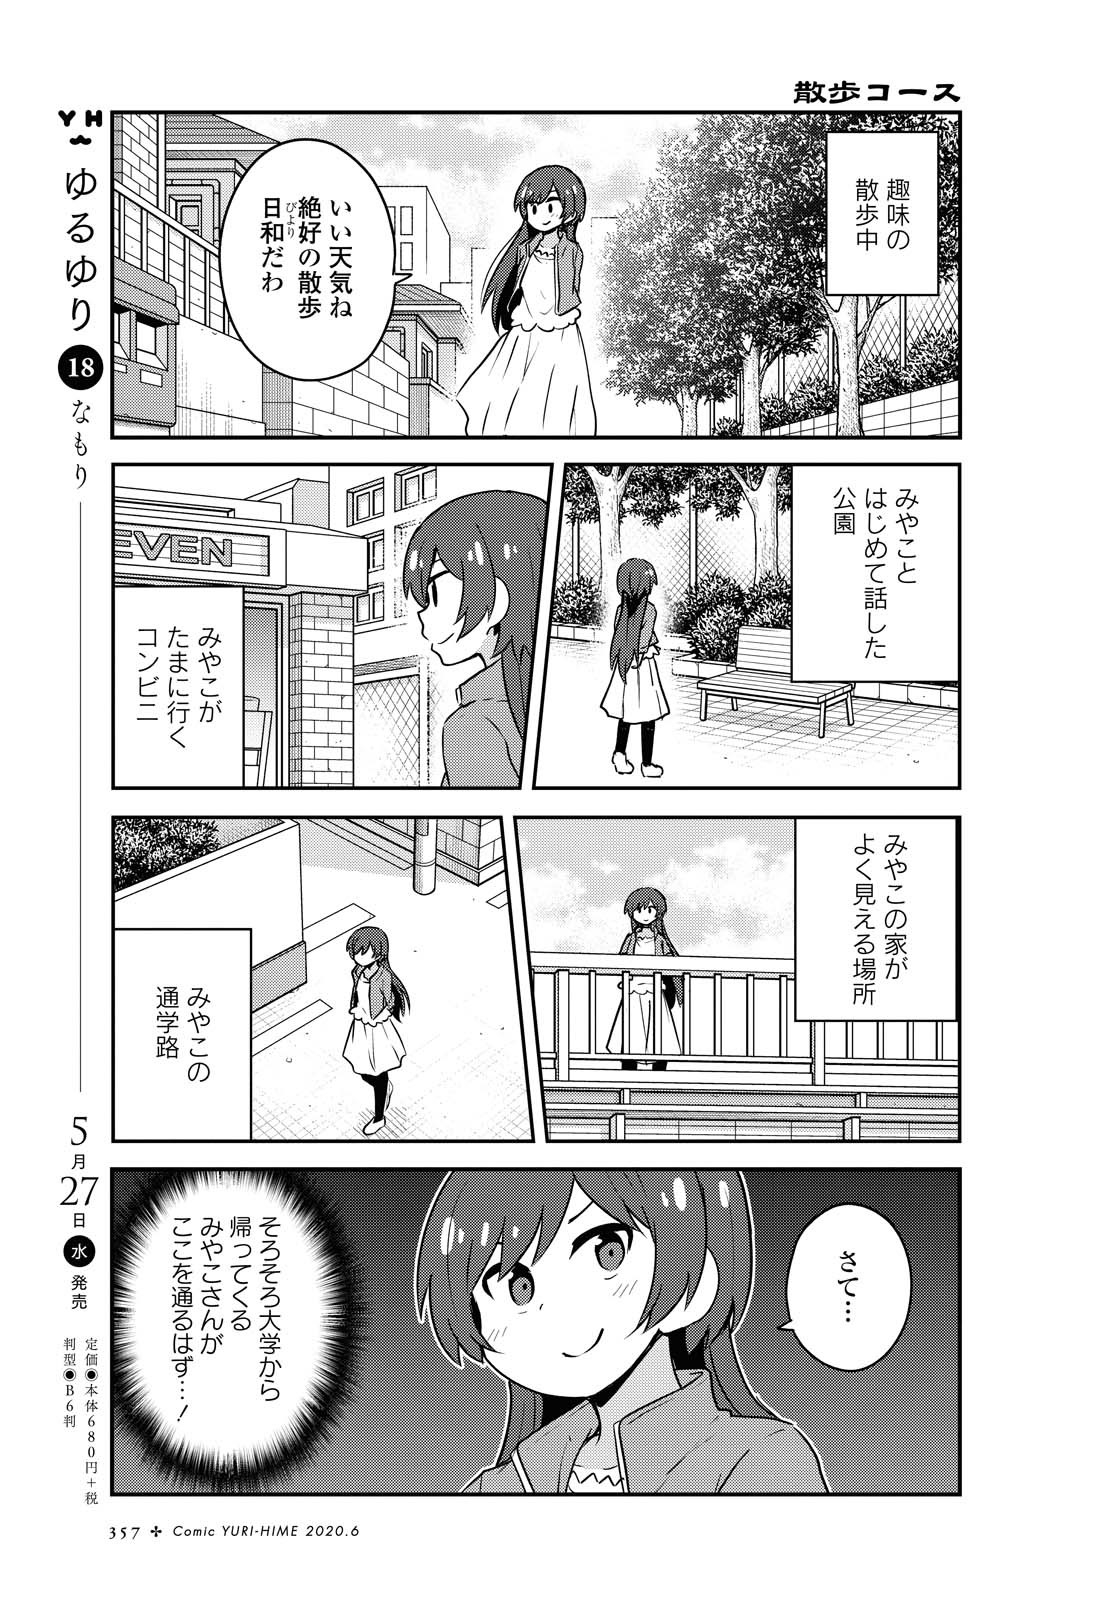 Watashi ni Tenshi ga Maiorita! - Chapter 65 - Page 3